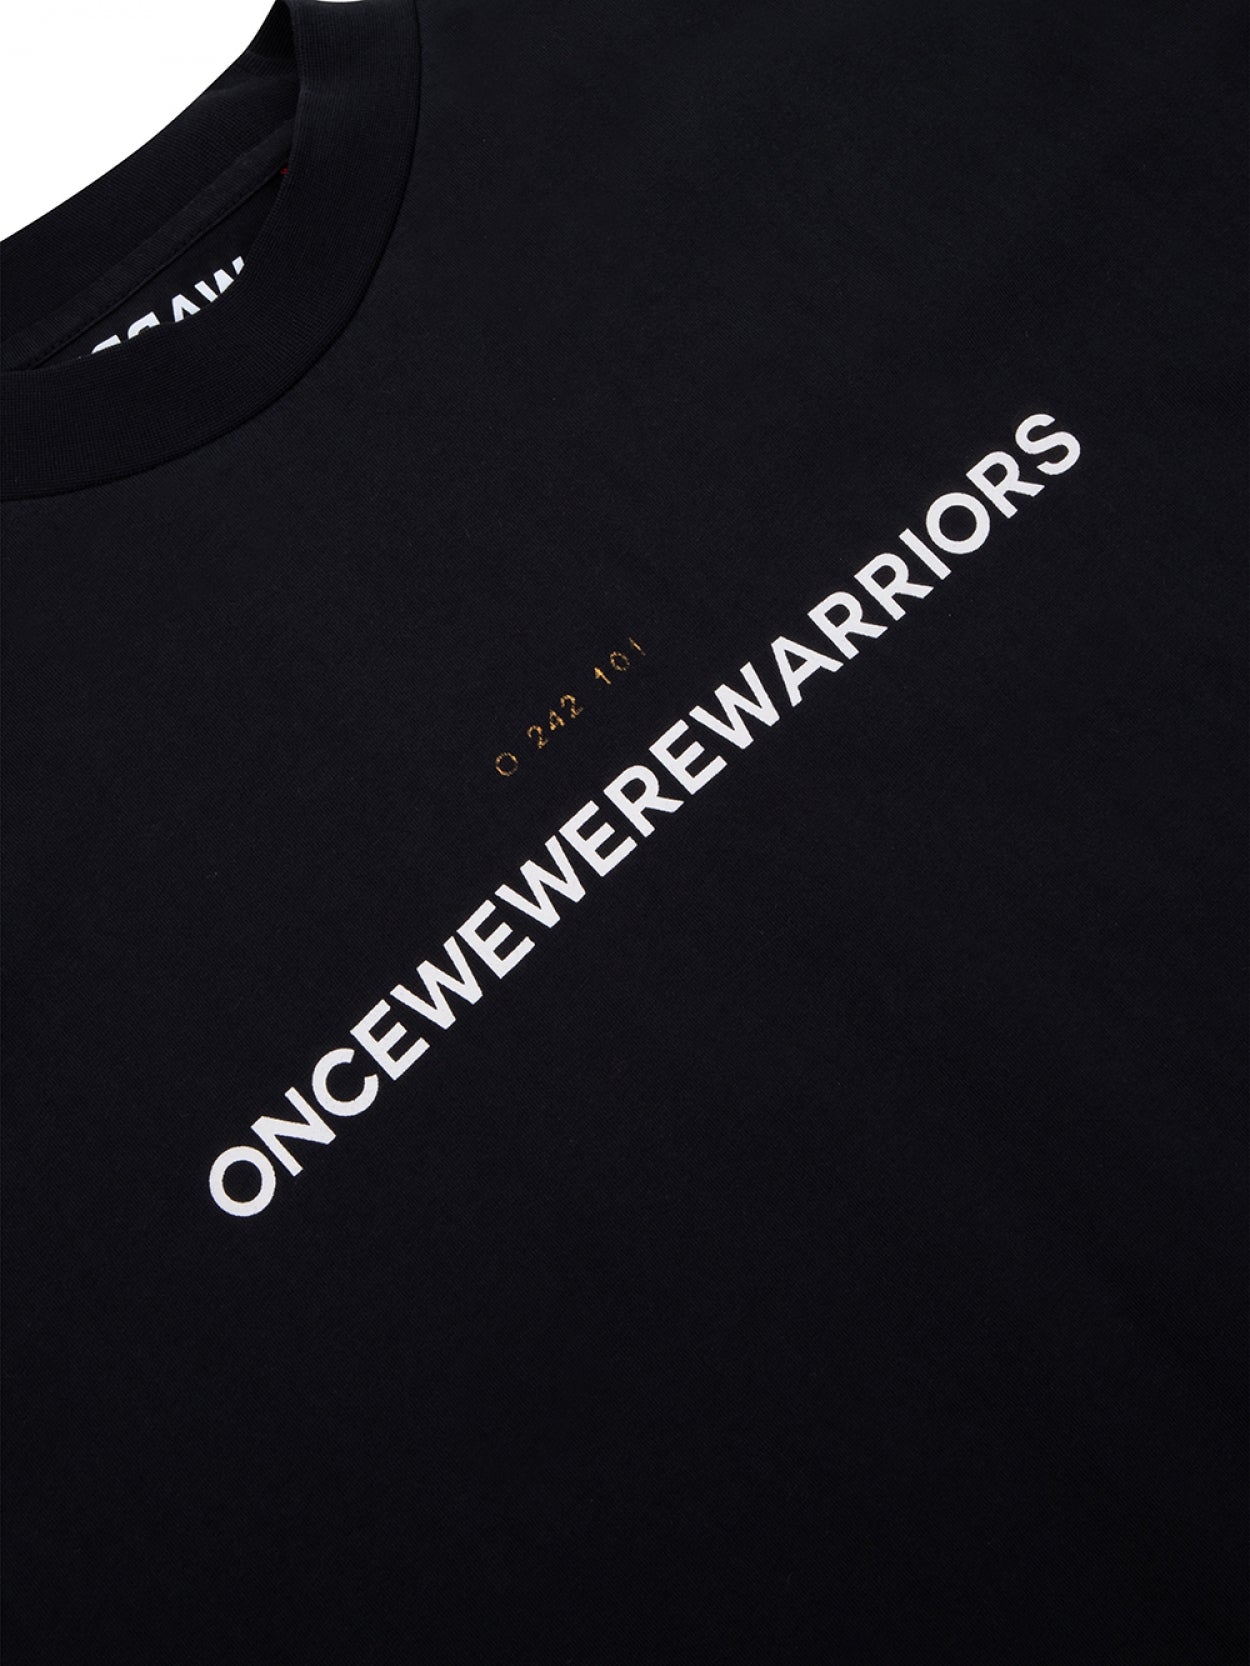 Ota Logo Tee | black - Once We Were Warriors